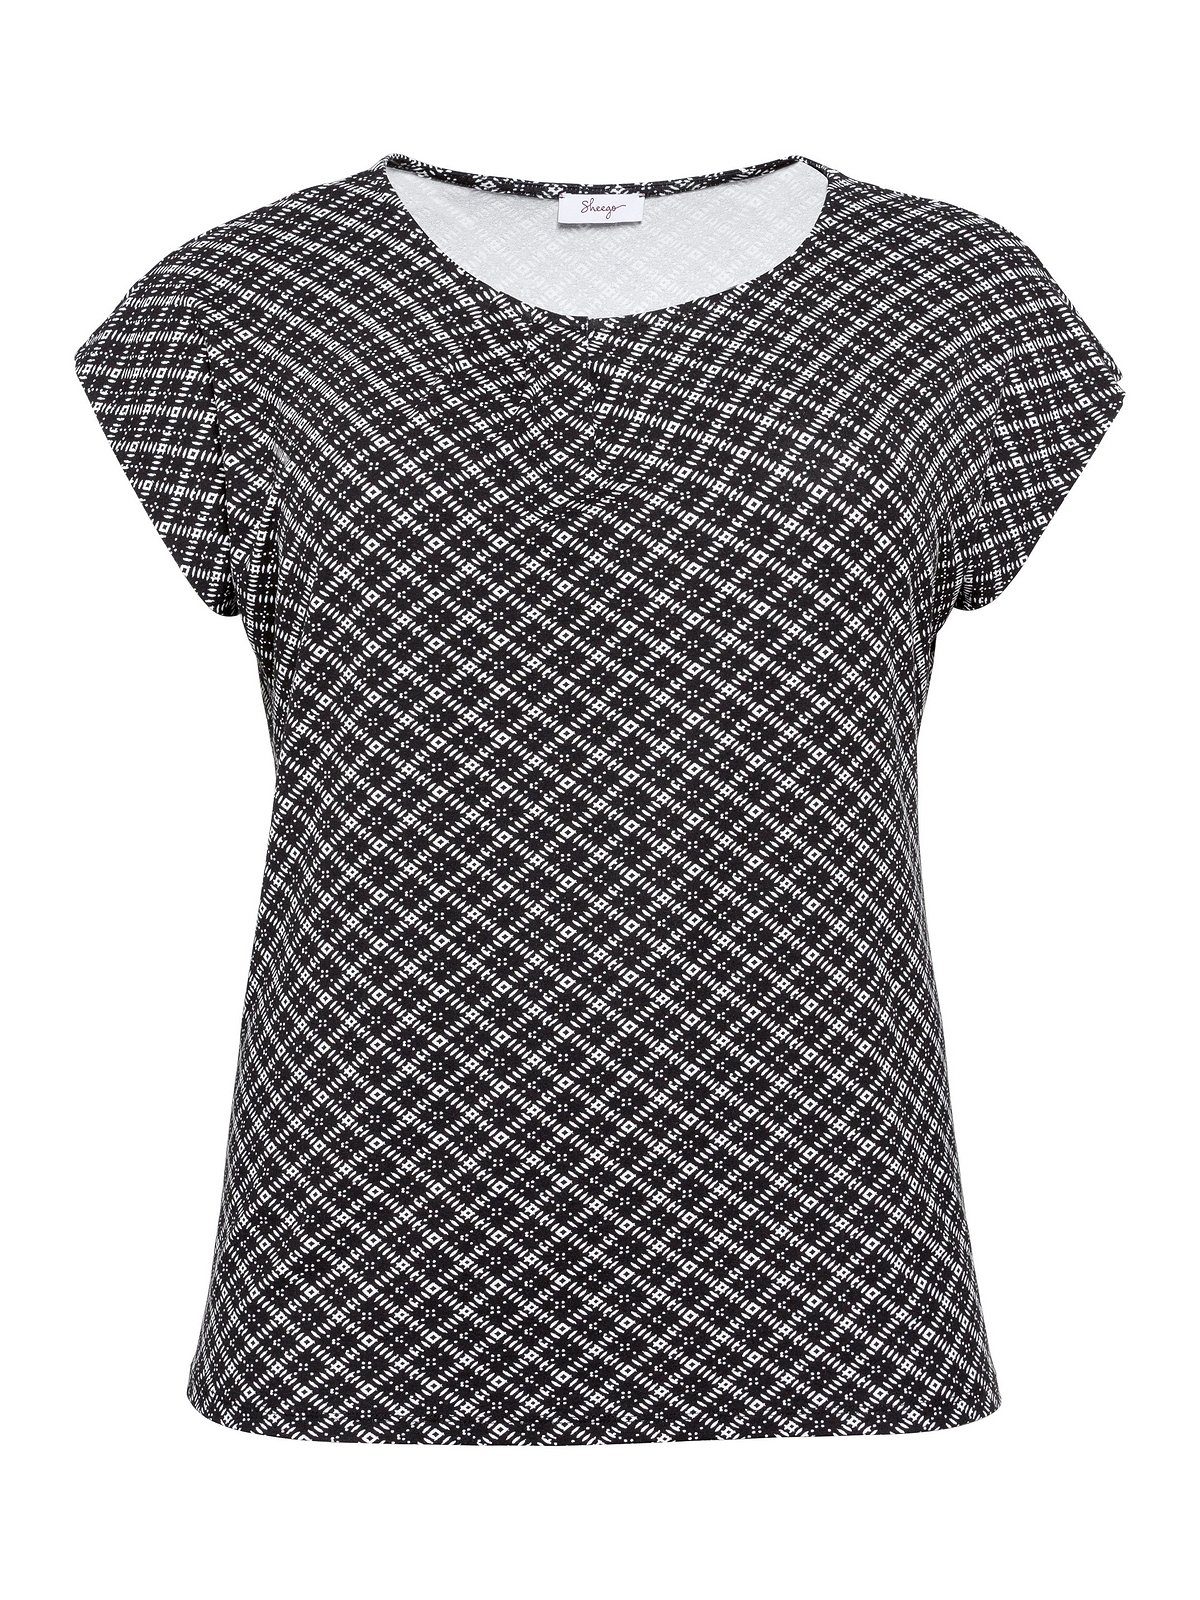 Sheego T-Shirt Große Größen mit angenehmem Falten, Viskosemix gelegten aus schwarz-weiß